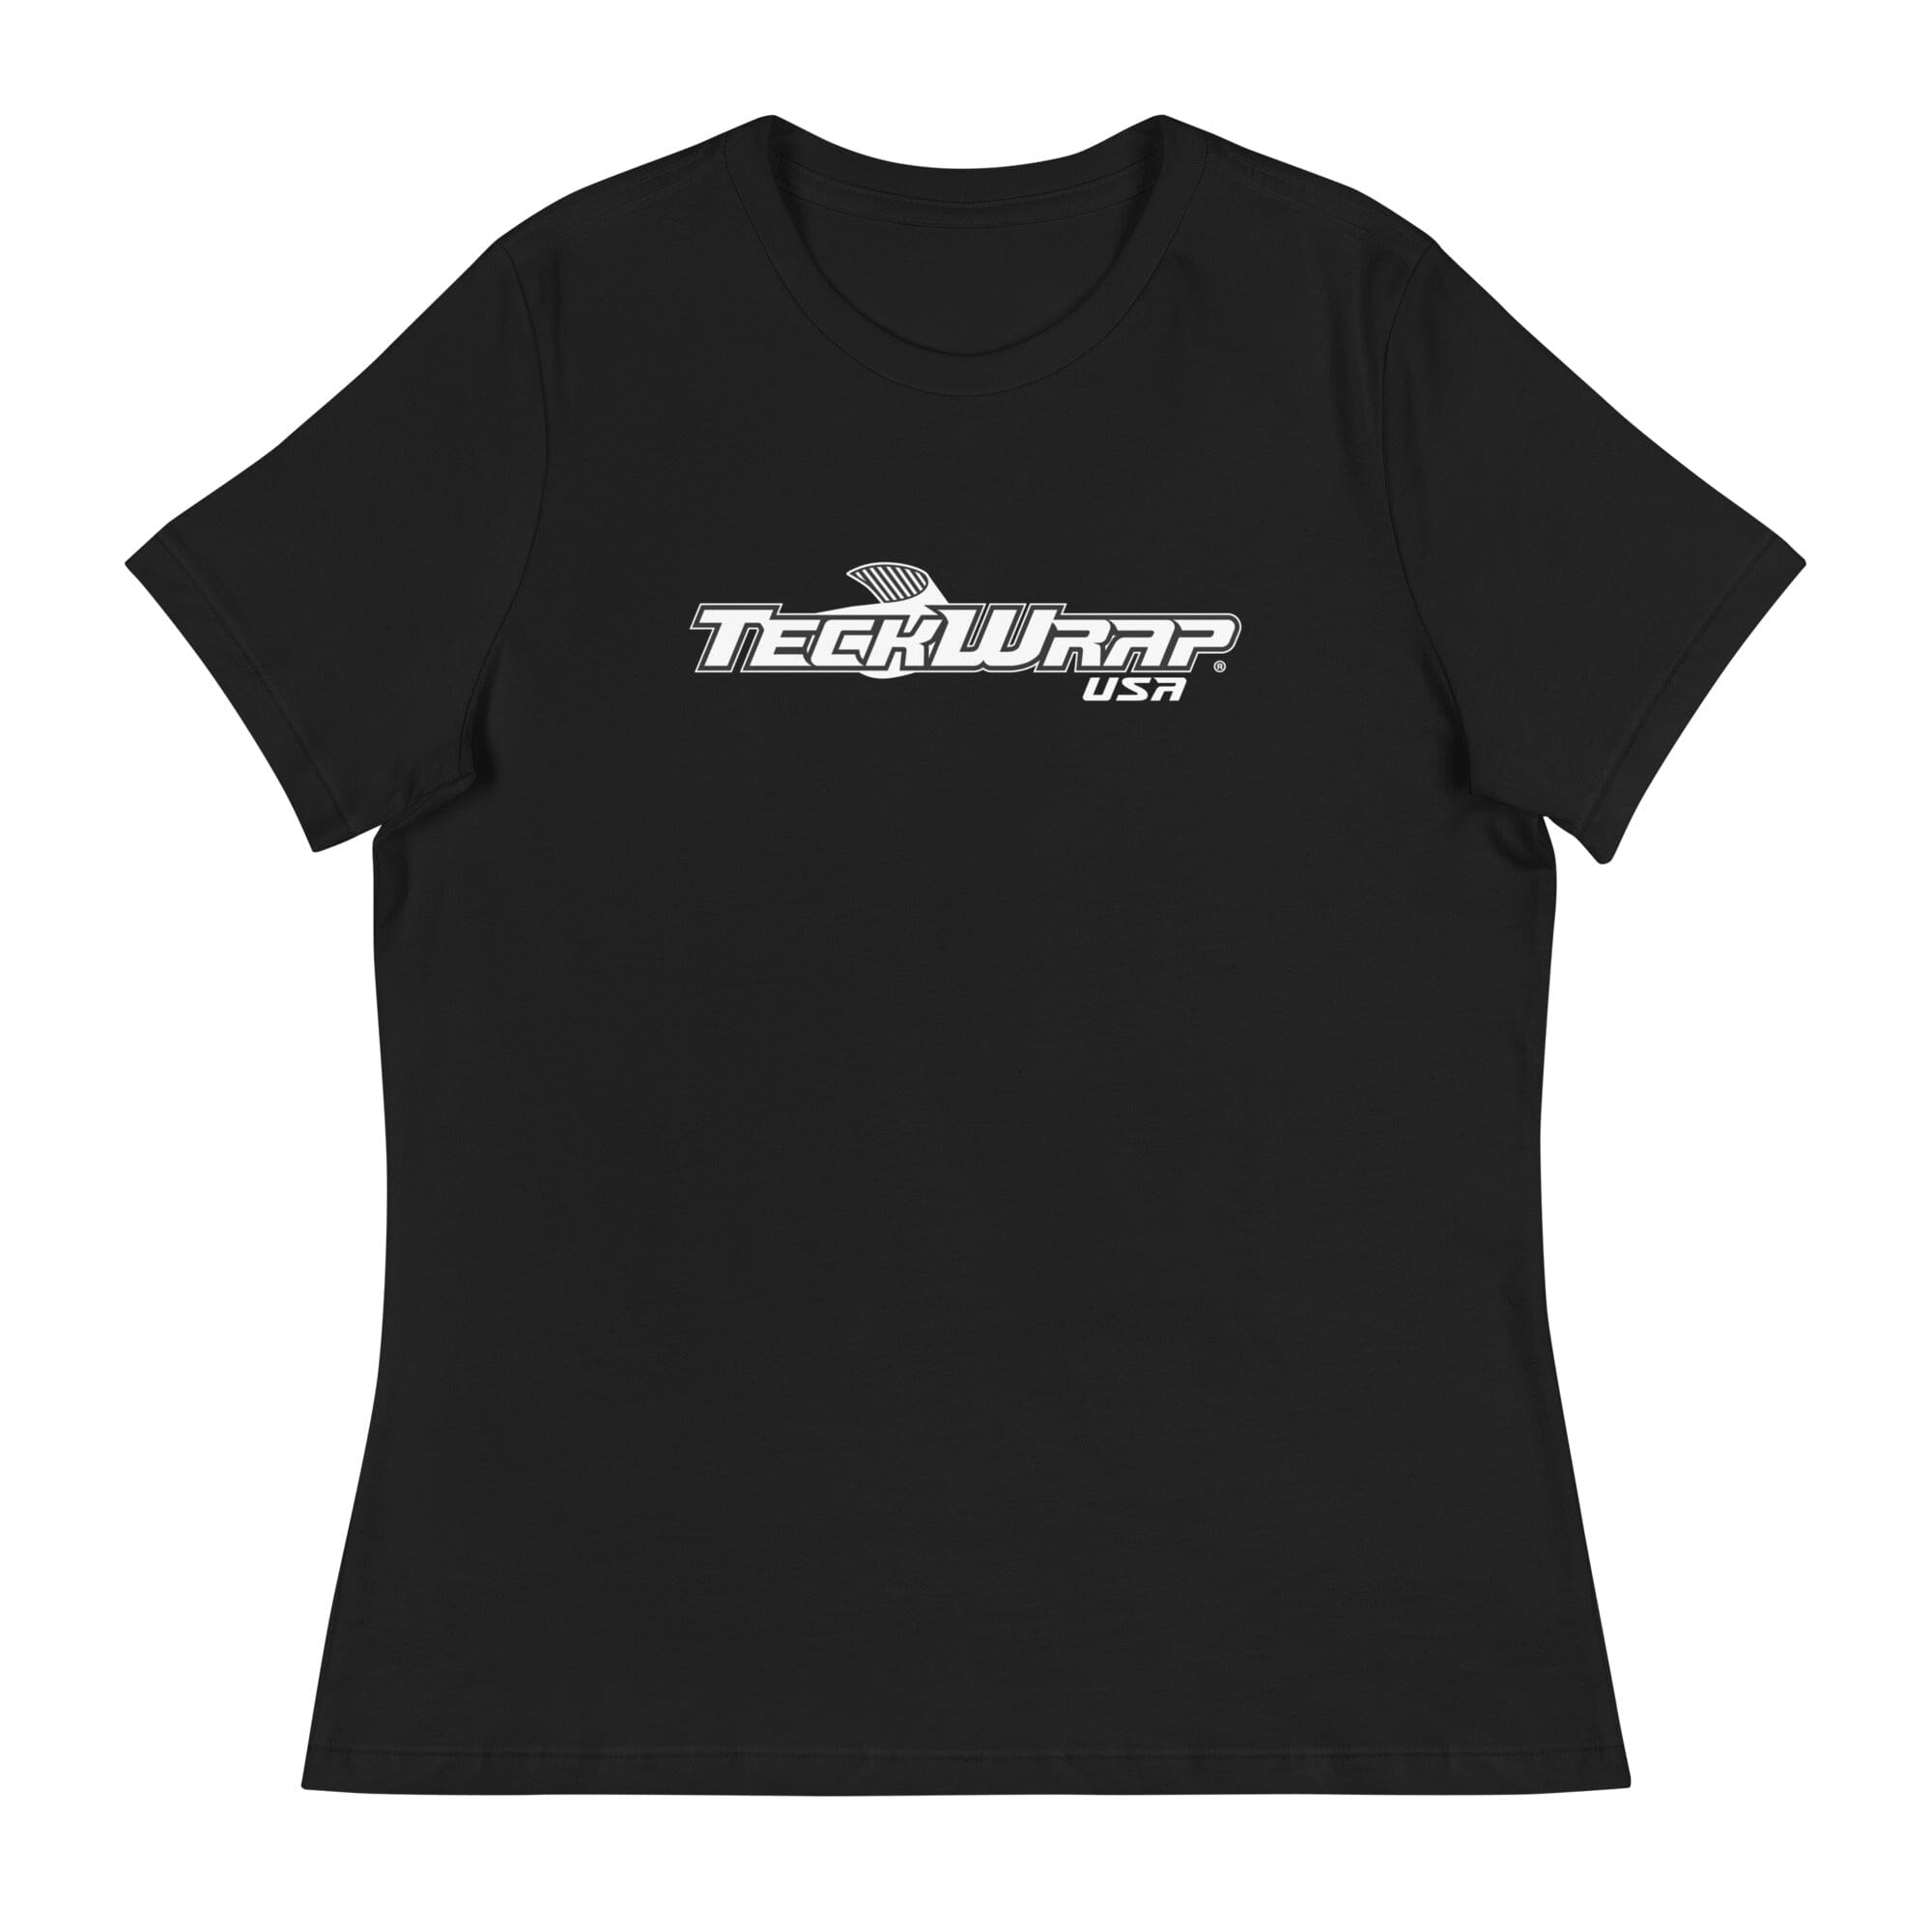 Women's TeckWrap Shirt Teckwrap USA Black S 